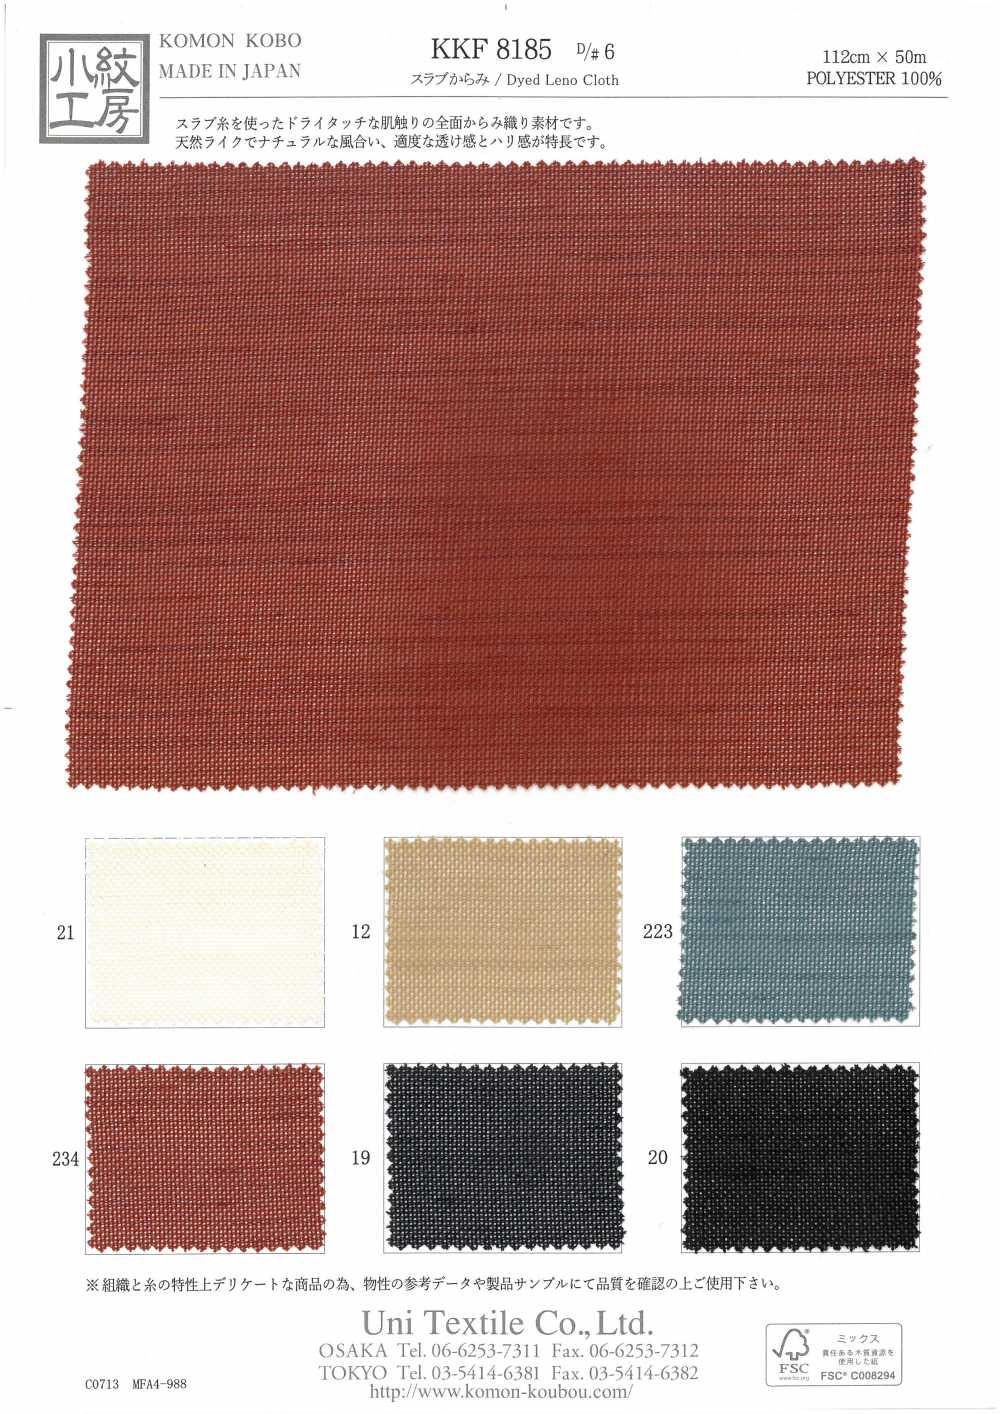 KKF8185-D/6 Von Der Platte[Textilgewebe] Uni Textile